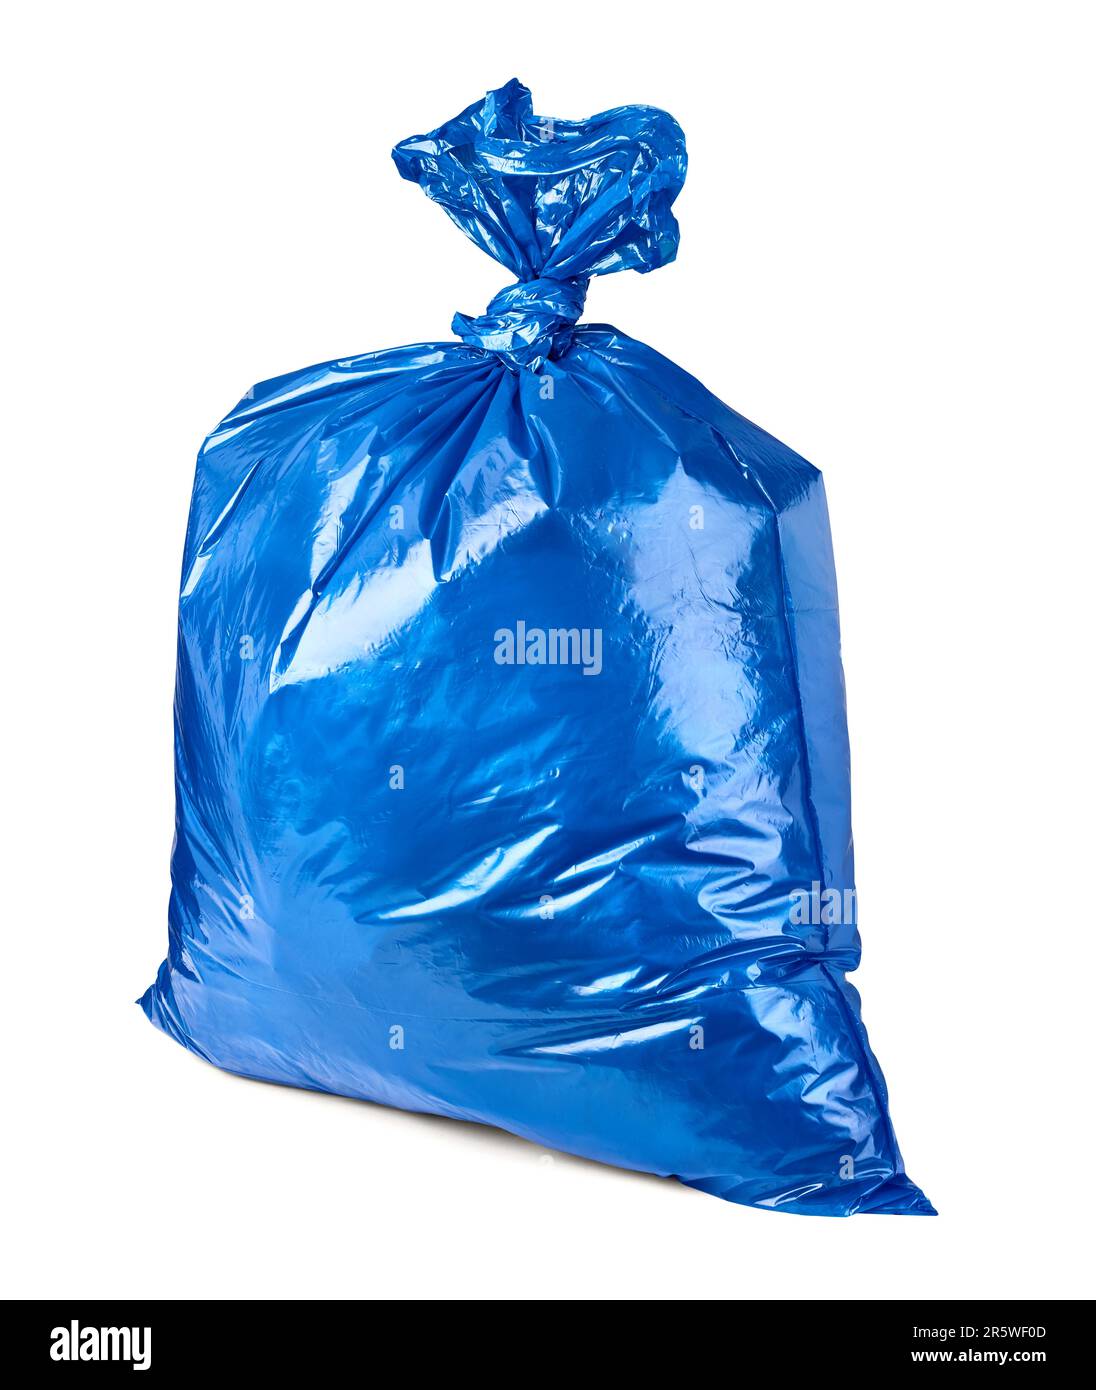 sac plastique déchets environnement pollution des déchets Banque D'Images